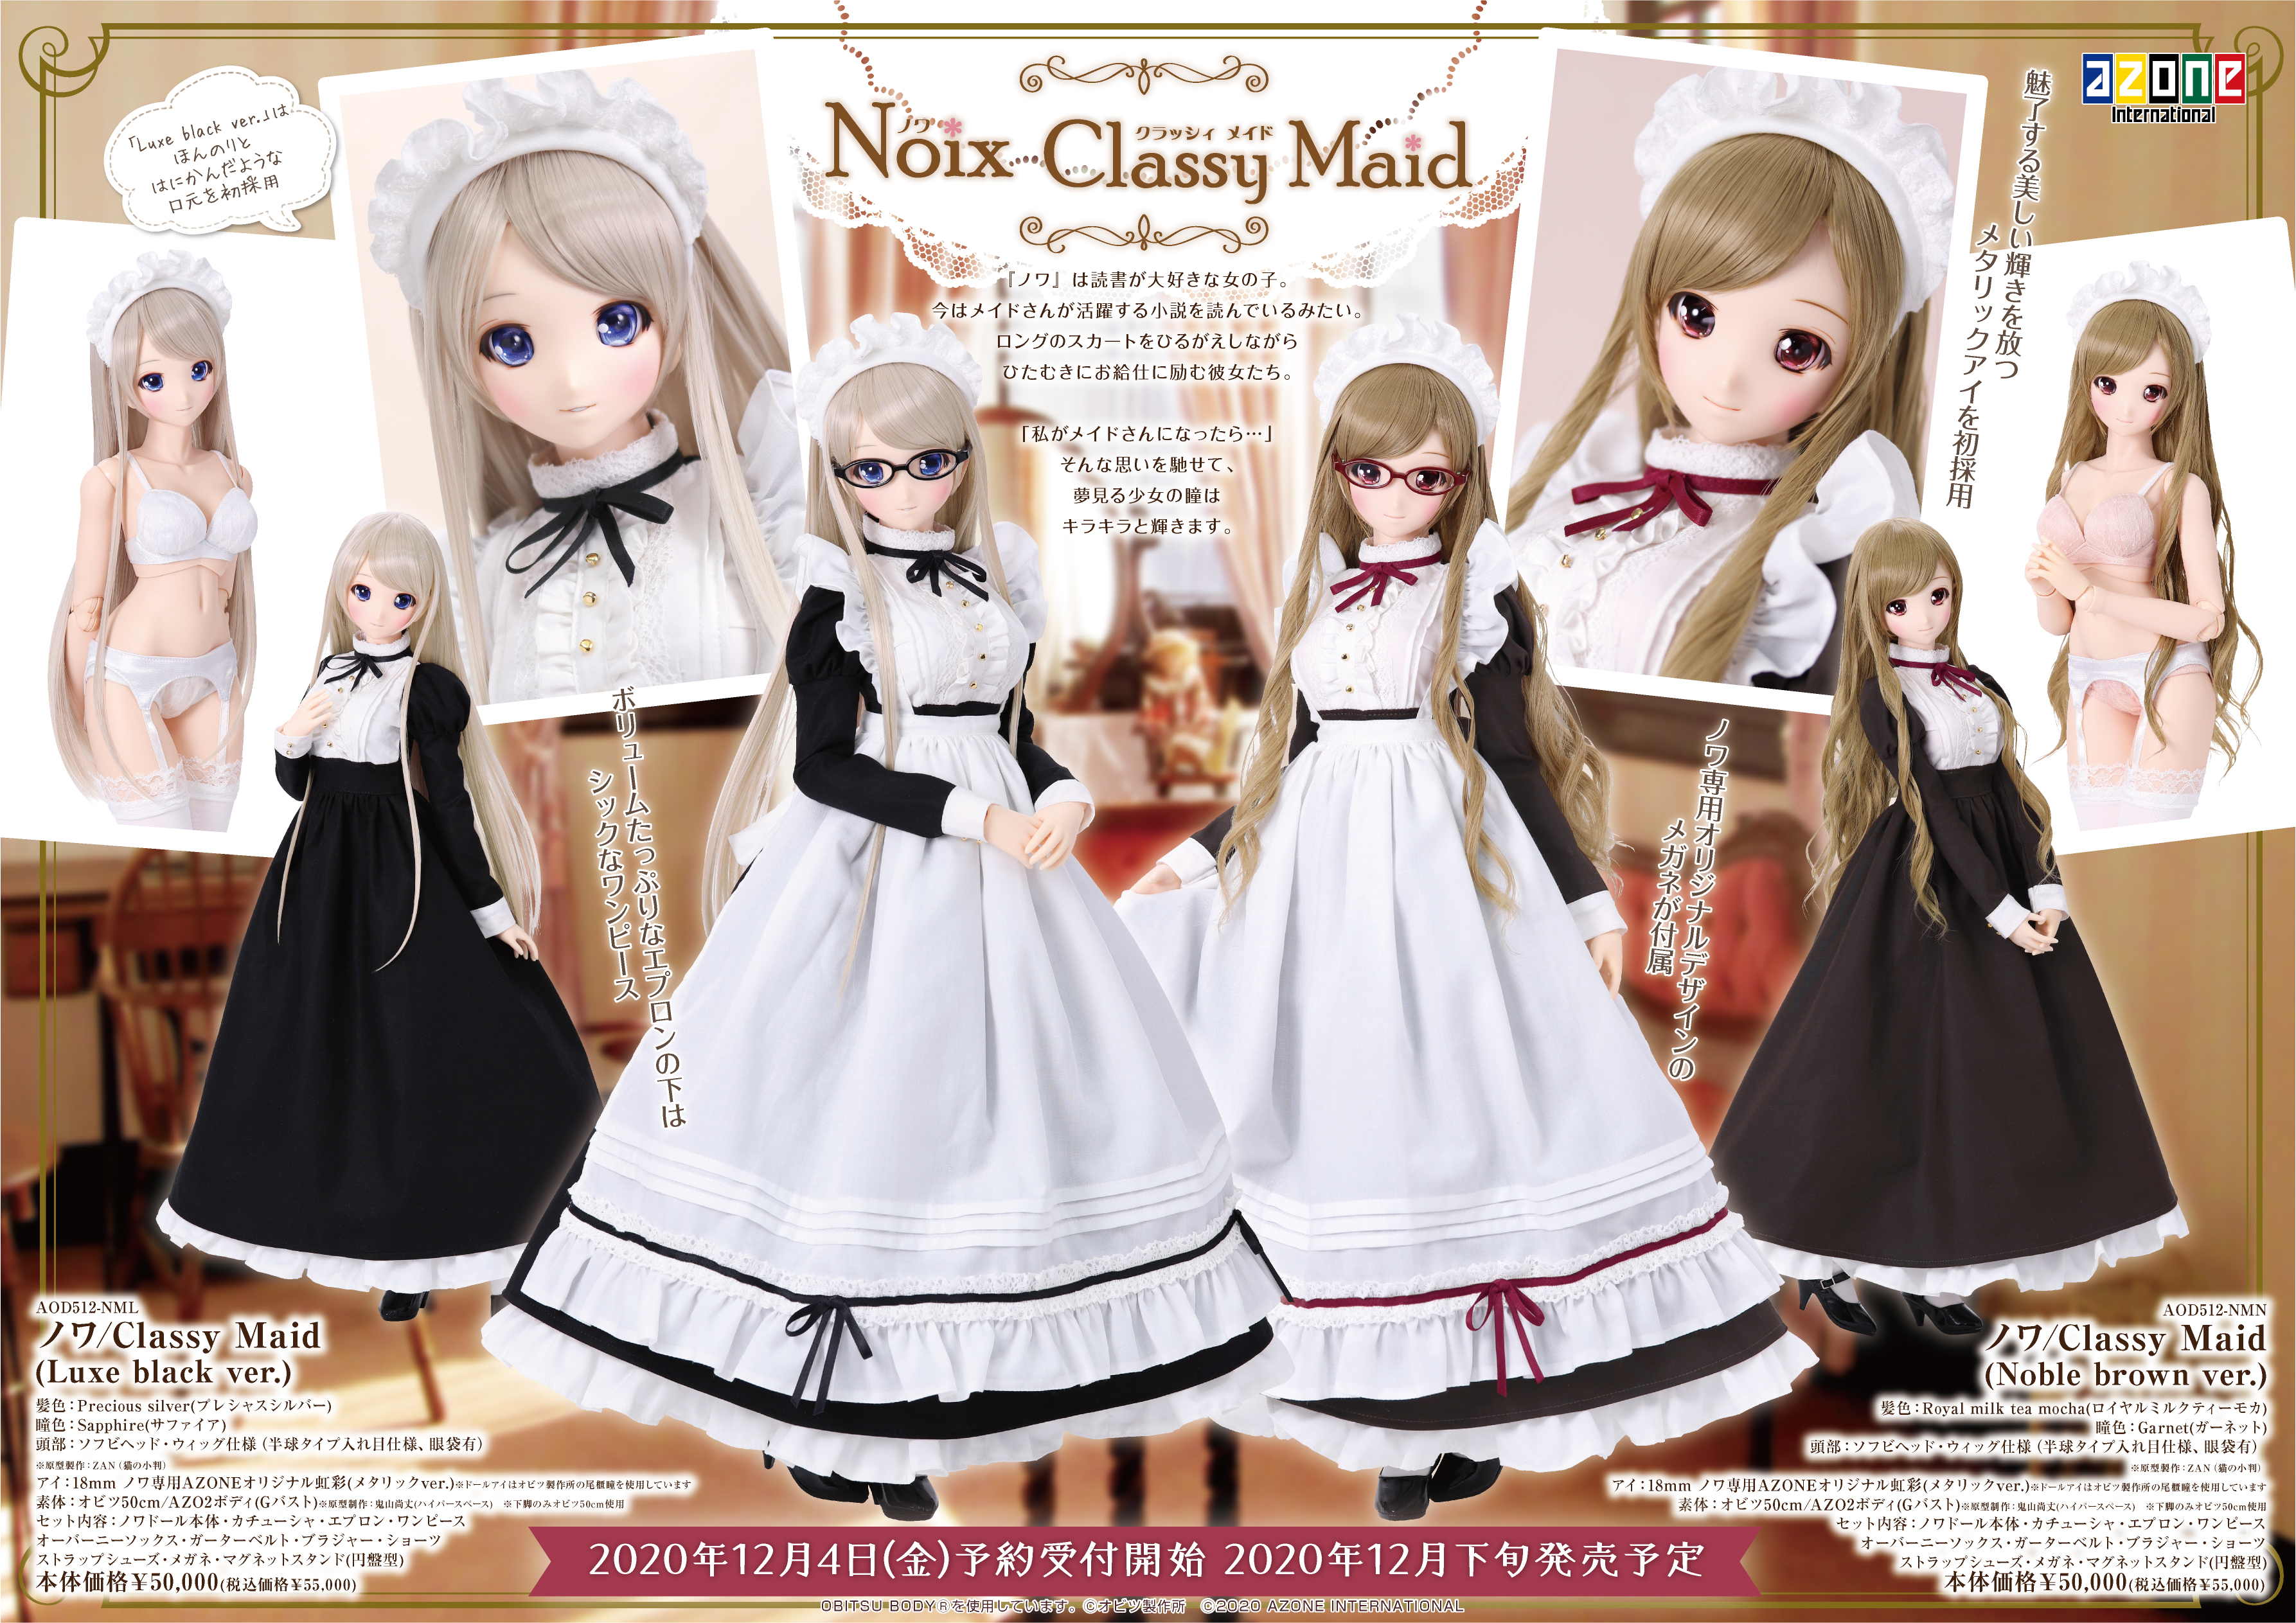 ノワ/Classy Maid